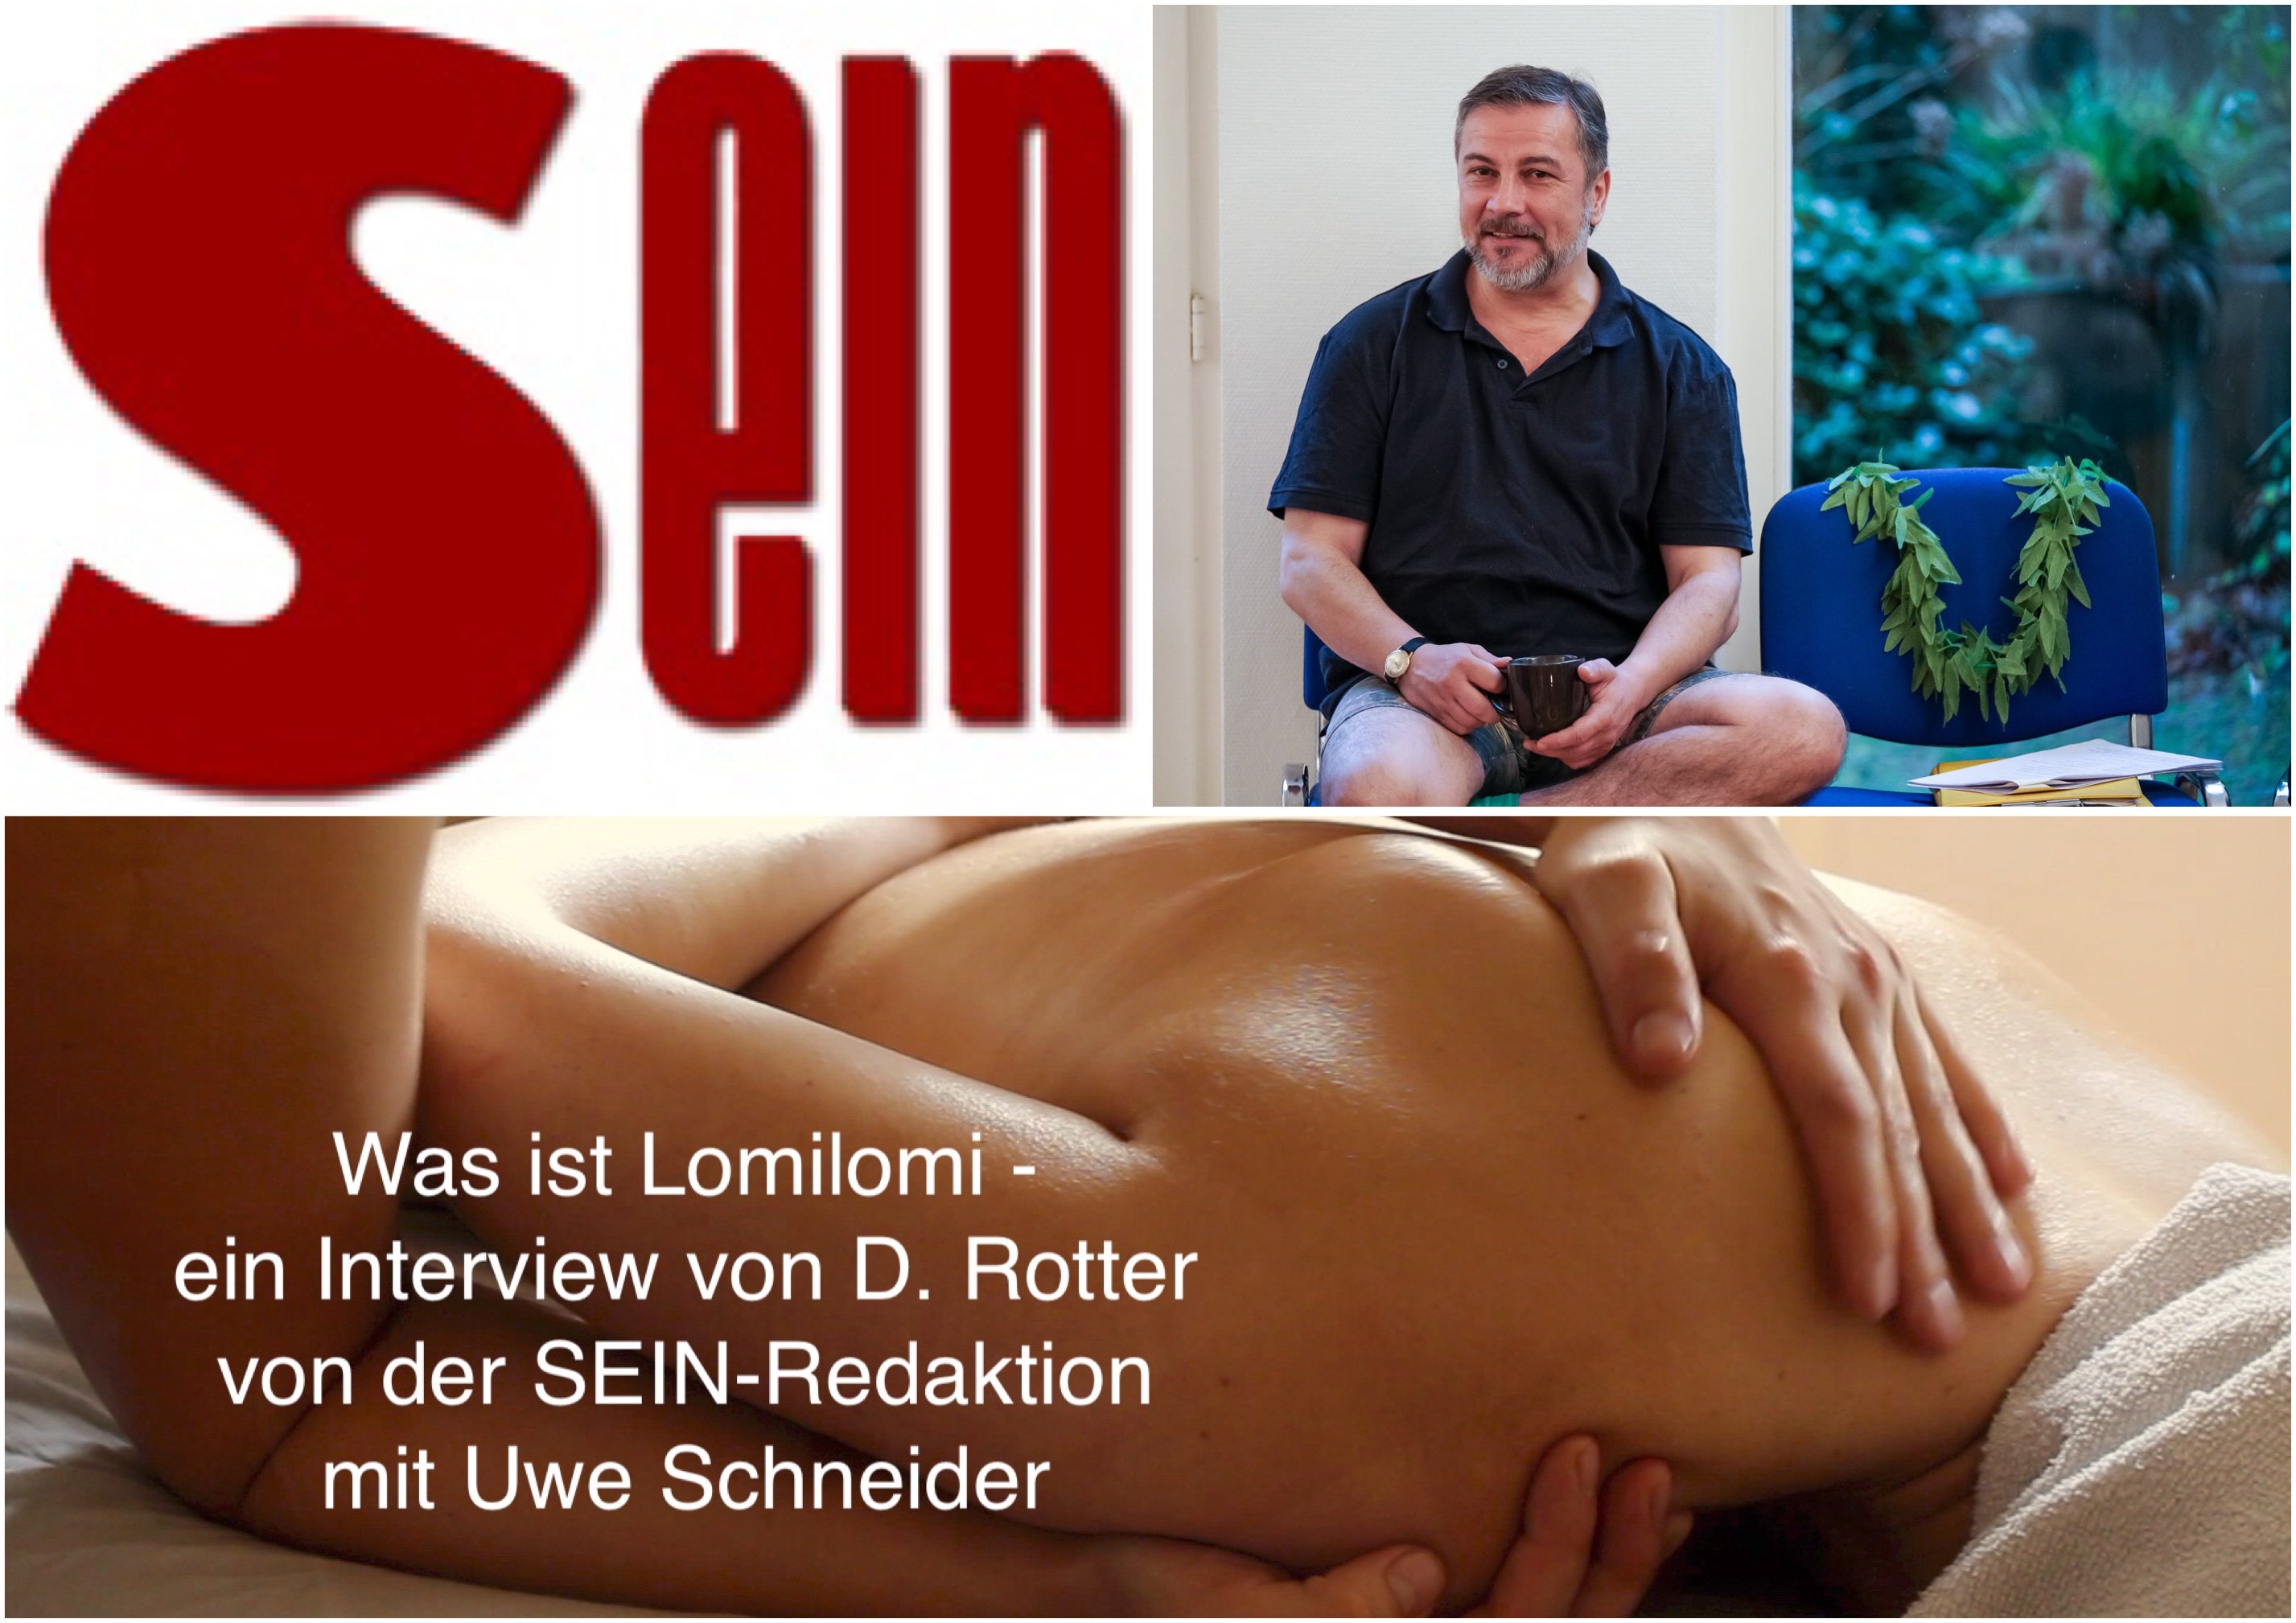 SEIN-Redaktion Interview mit Uwe Schneider